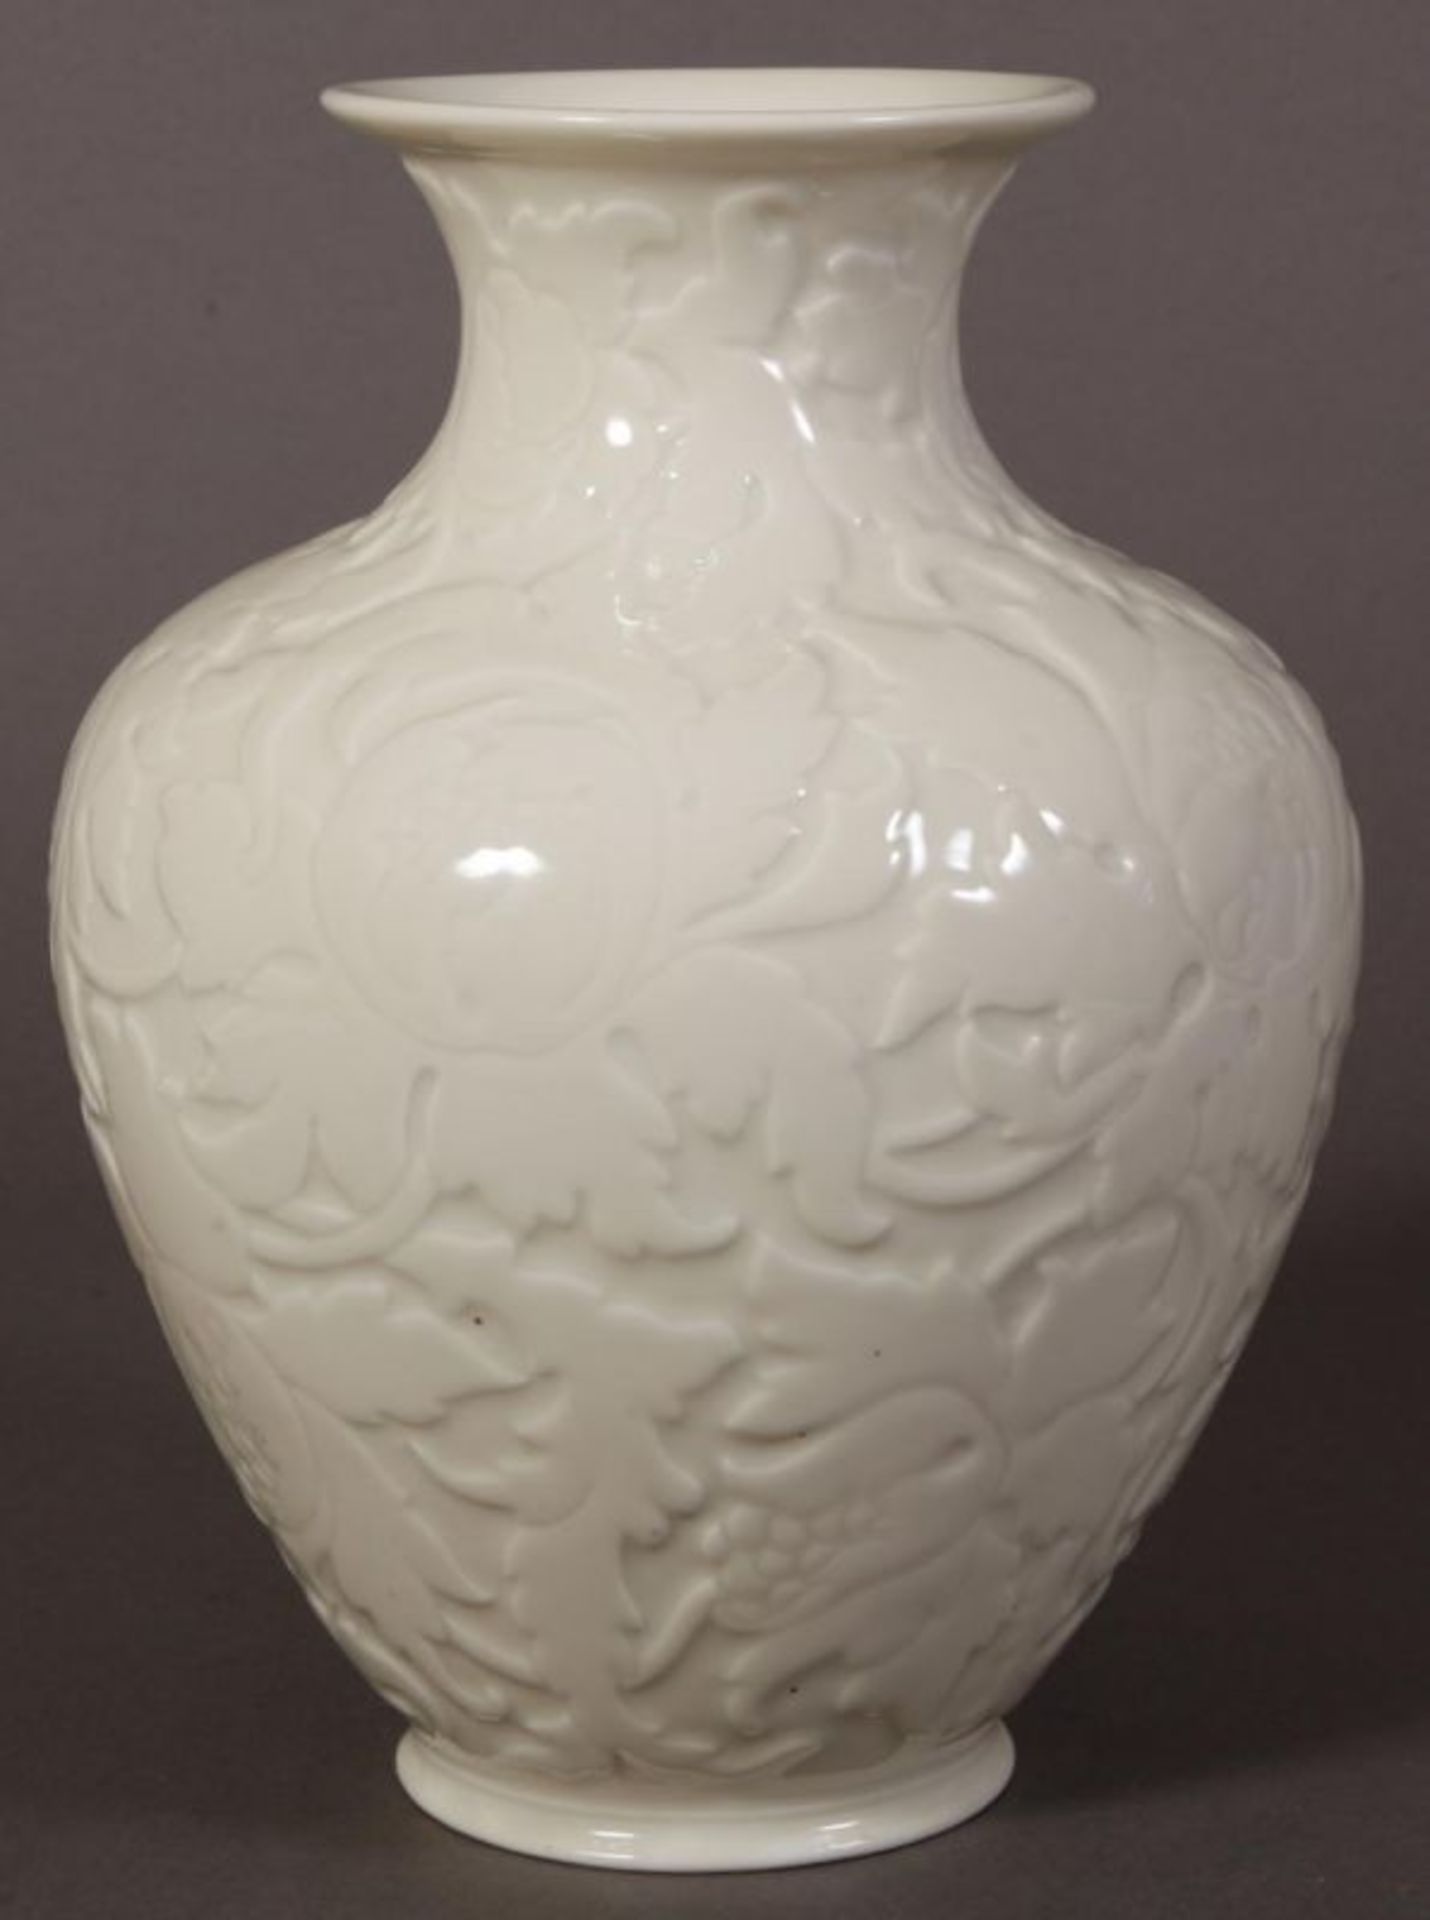 Bauchige "Rosenthal"-Vase, flächiger Floraldekor. Höhe 29 cm, Durchmesser 20 cm. - Image 3 of 6